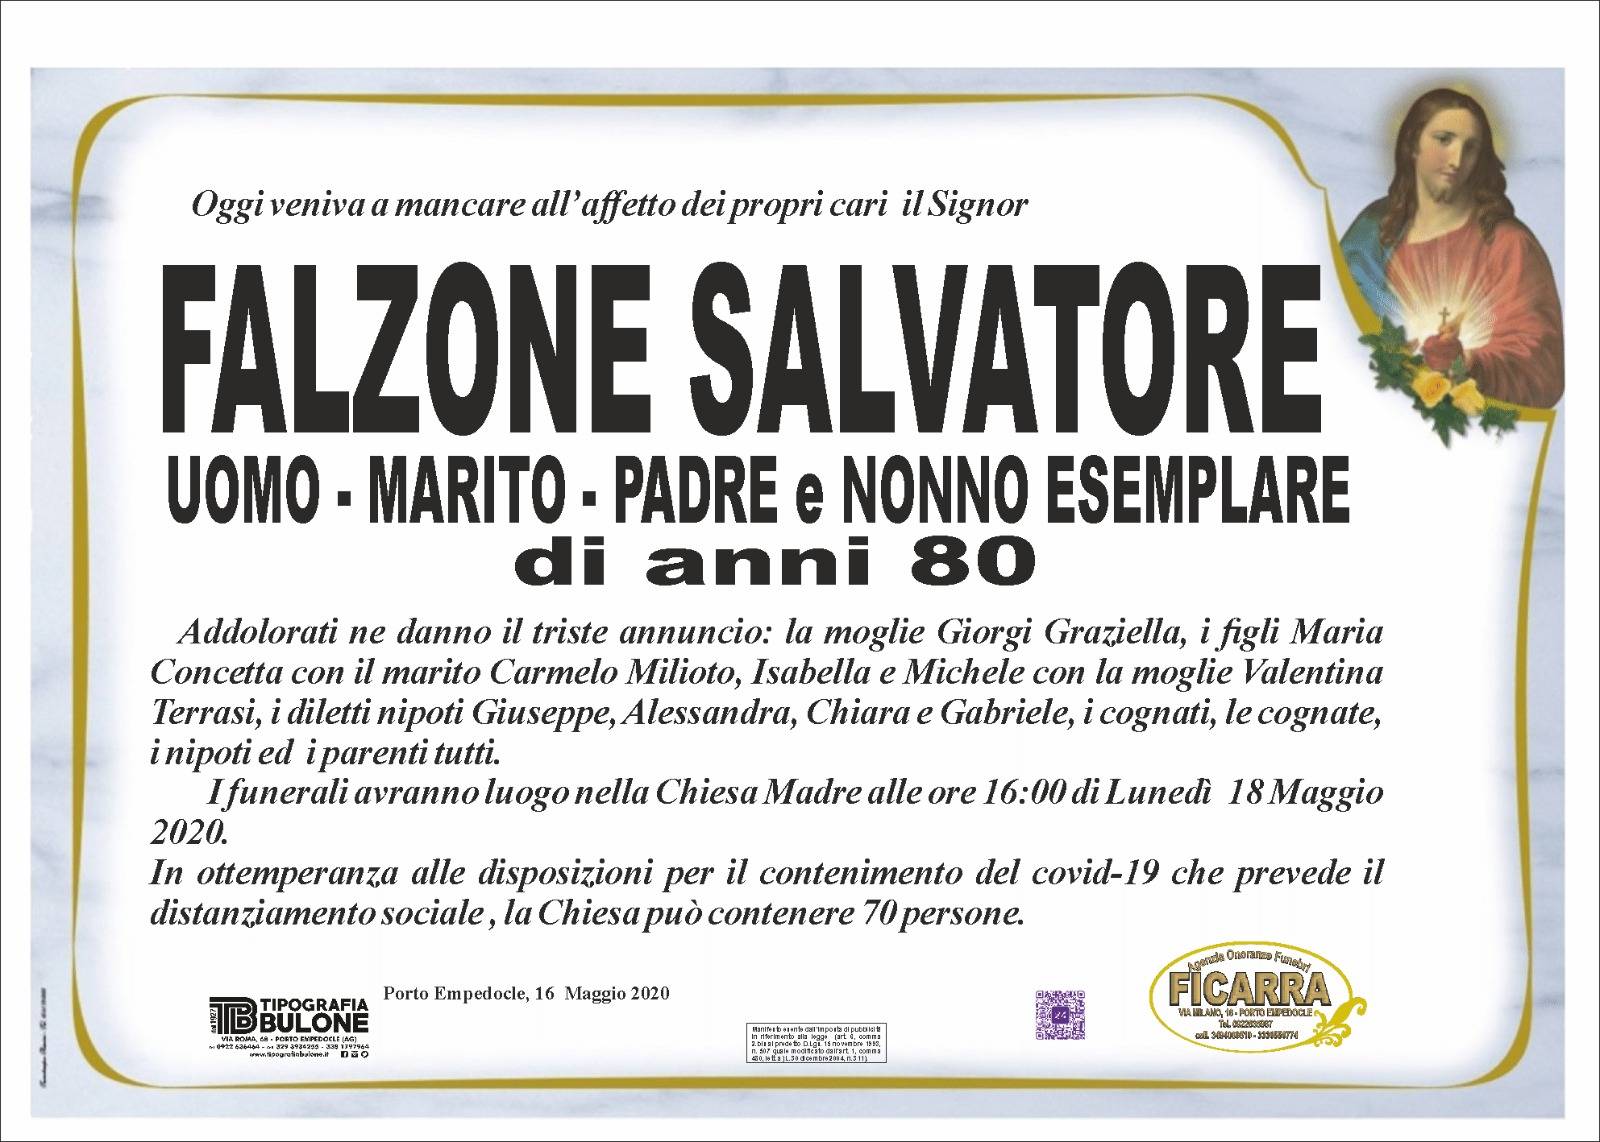 Salvatore Falzone